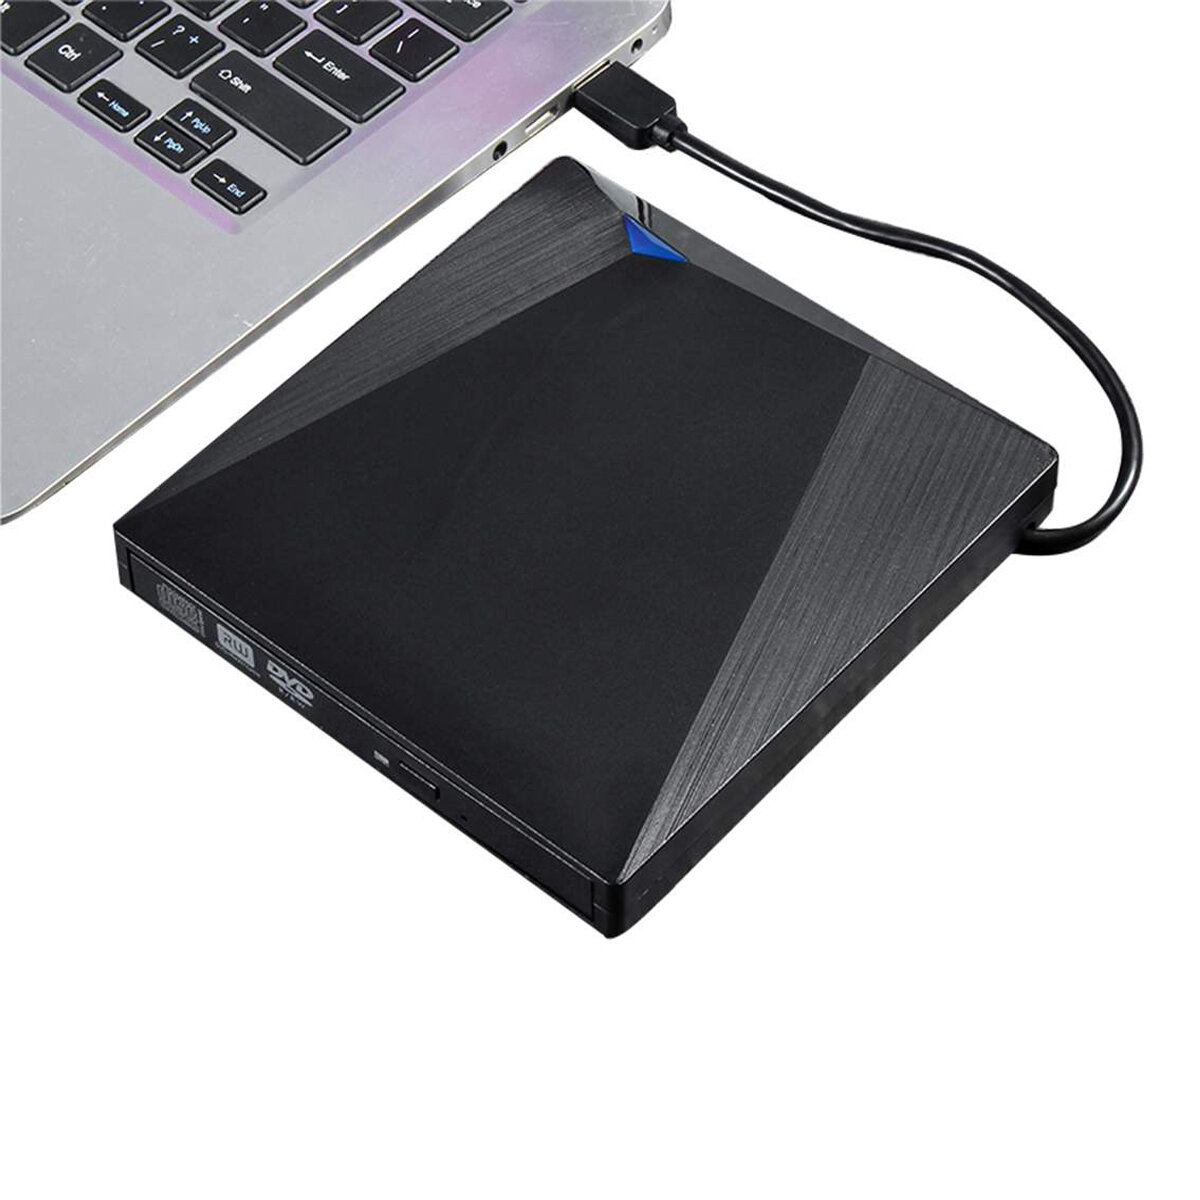 

Type-C USB 3.0 Внешний DVD-рекордер Пишущий рекордер Плеер DVD RW Оптический привод CD / DVD-плеер для ноутбука Windows